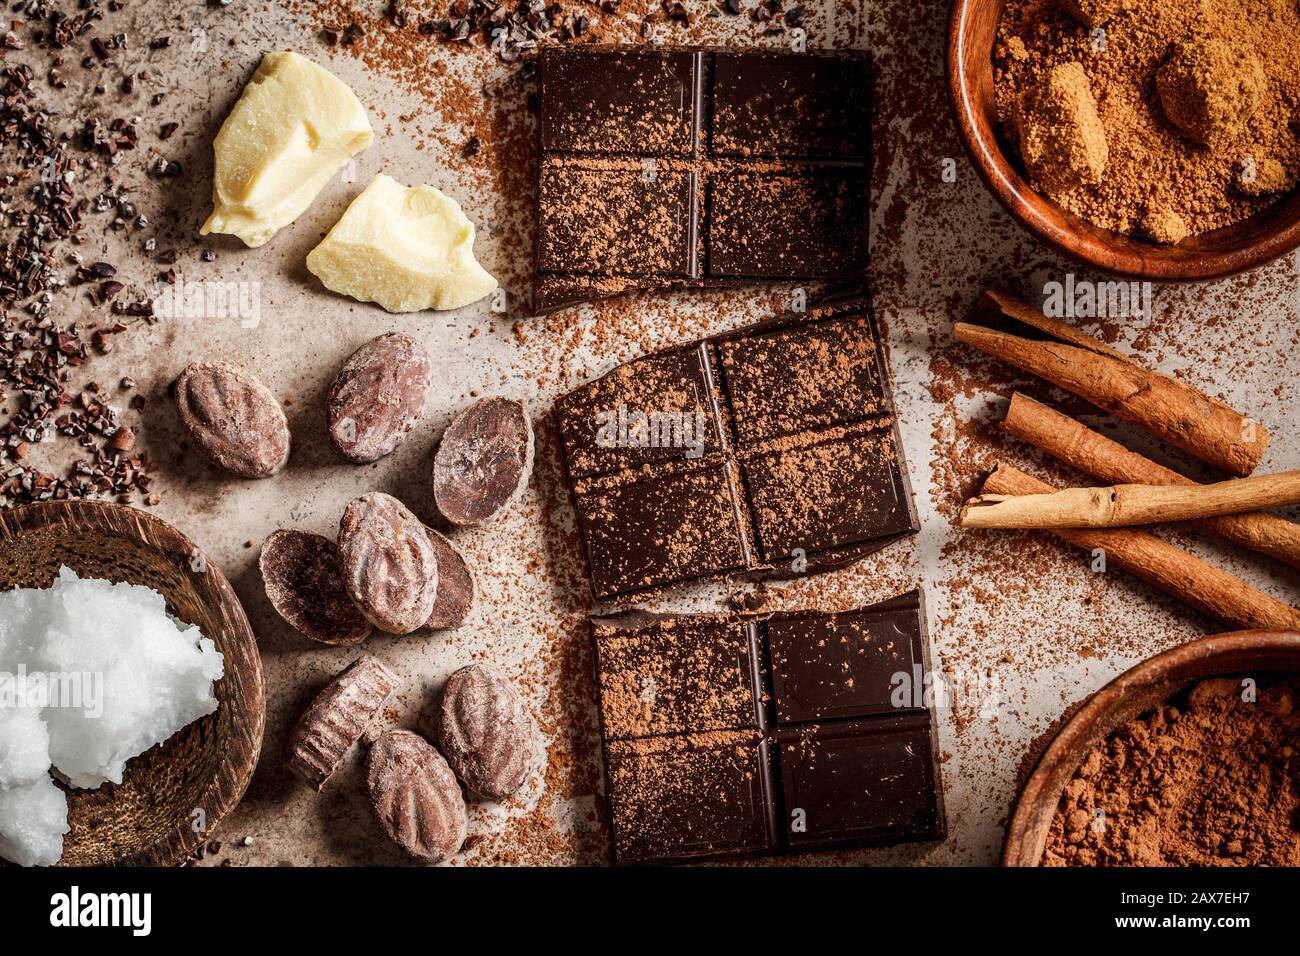 Ingrédients pour la fabrication de fond de chocolat. Cacao, beurre de cacao, sucre, cannelle et huile de coco sur fond sombre. Concept de chocolat. Banque D'Images